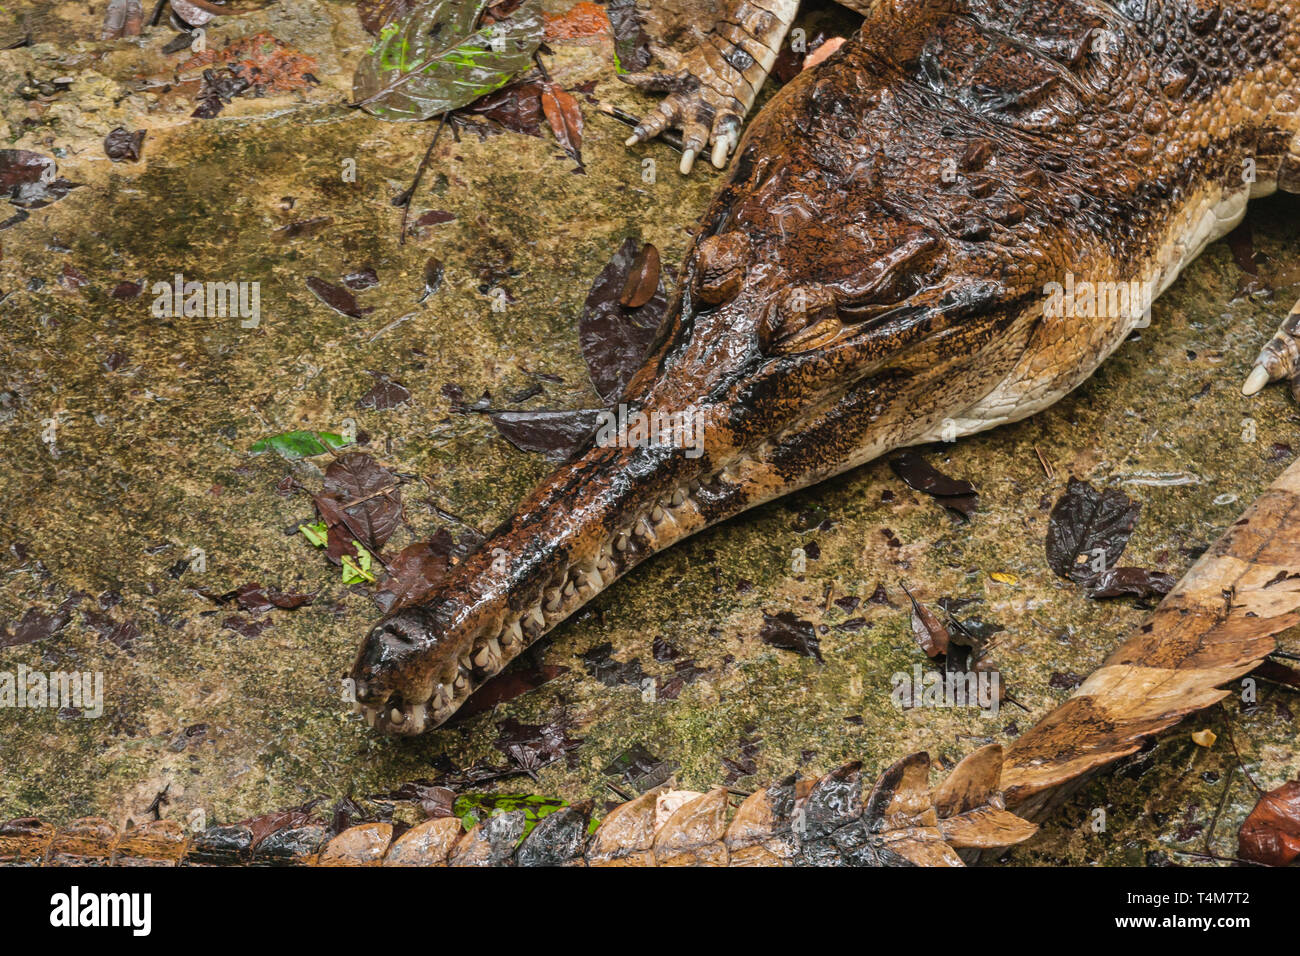 Die false gharial (Tomistoma schlegelii), auch bekannt als Malaiische gharial, Sunda gharial und tomistoma, ist ein Süßwasser Krokodile Stockfoto